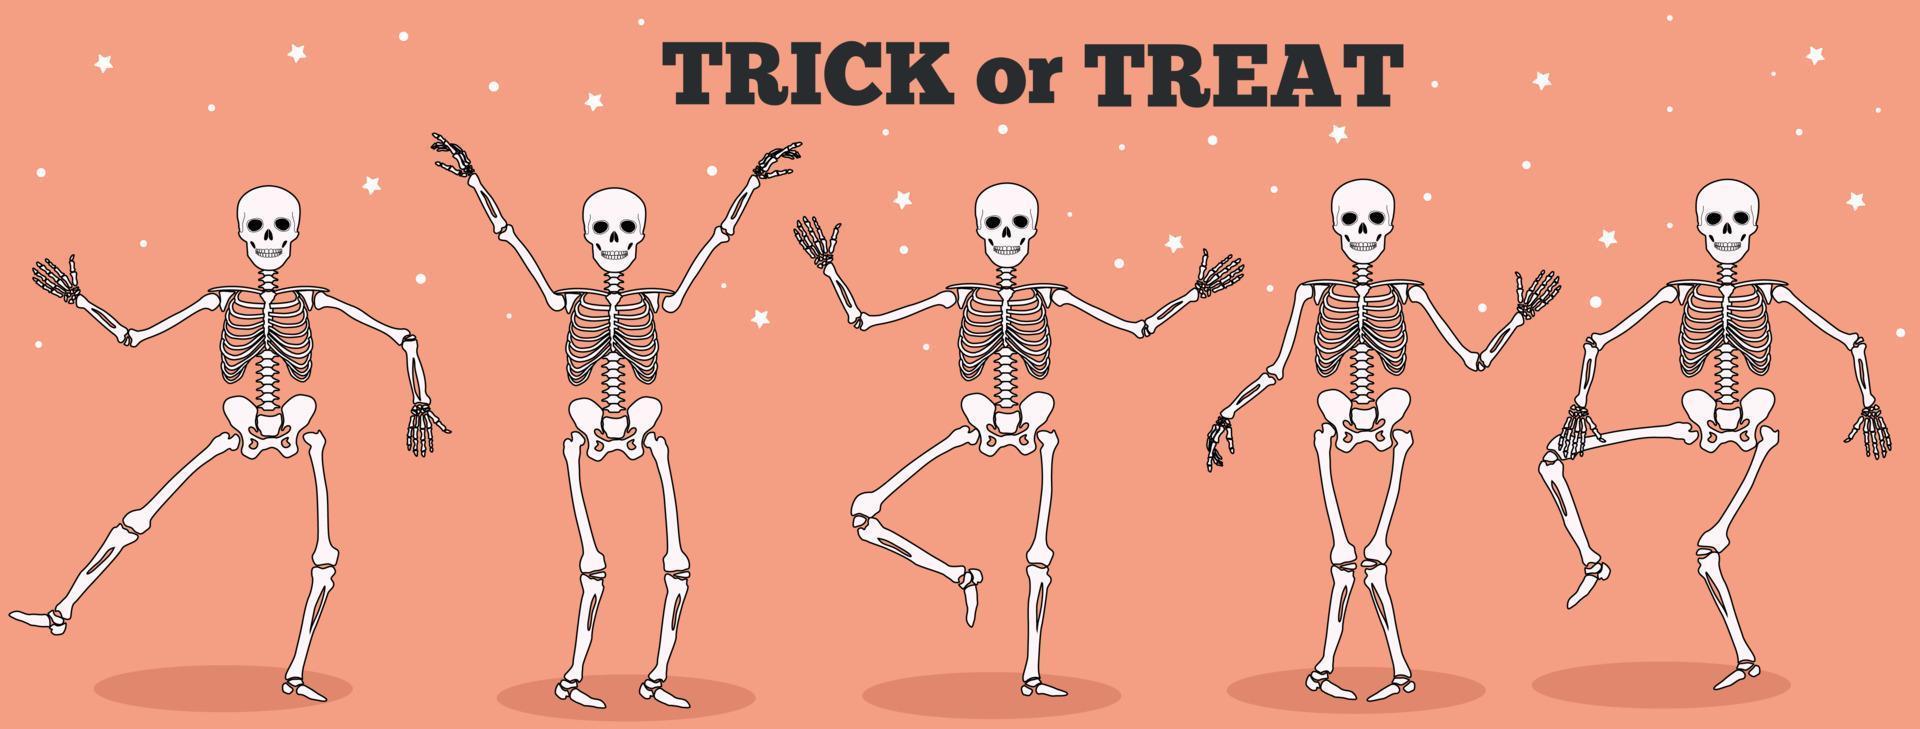 esqueletos engraçados dançando. dia dos mortos, ilustração em vetor conceito de halloween. doçura ou travessura.